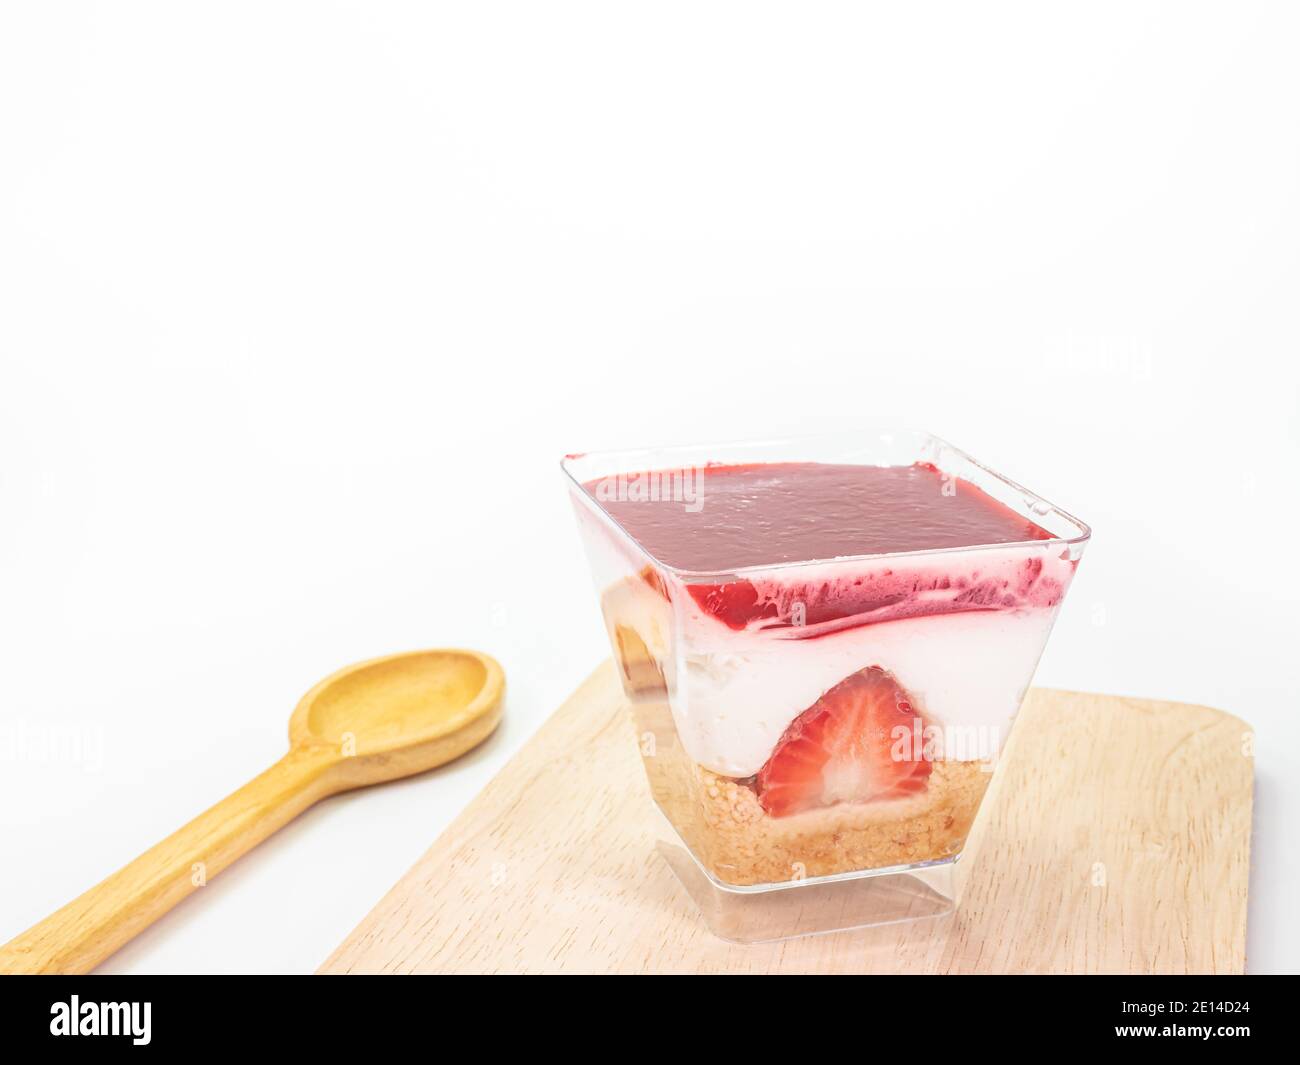 Primo piano della cheesecake alla fragola in una tazza trasparente di plastica quadrata su tavola di legno su sfondo bianco. Foto Stock